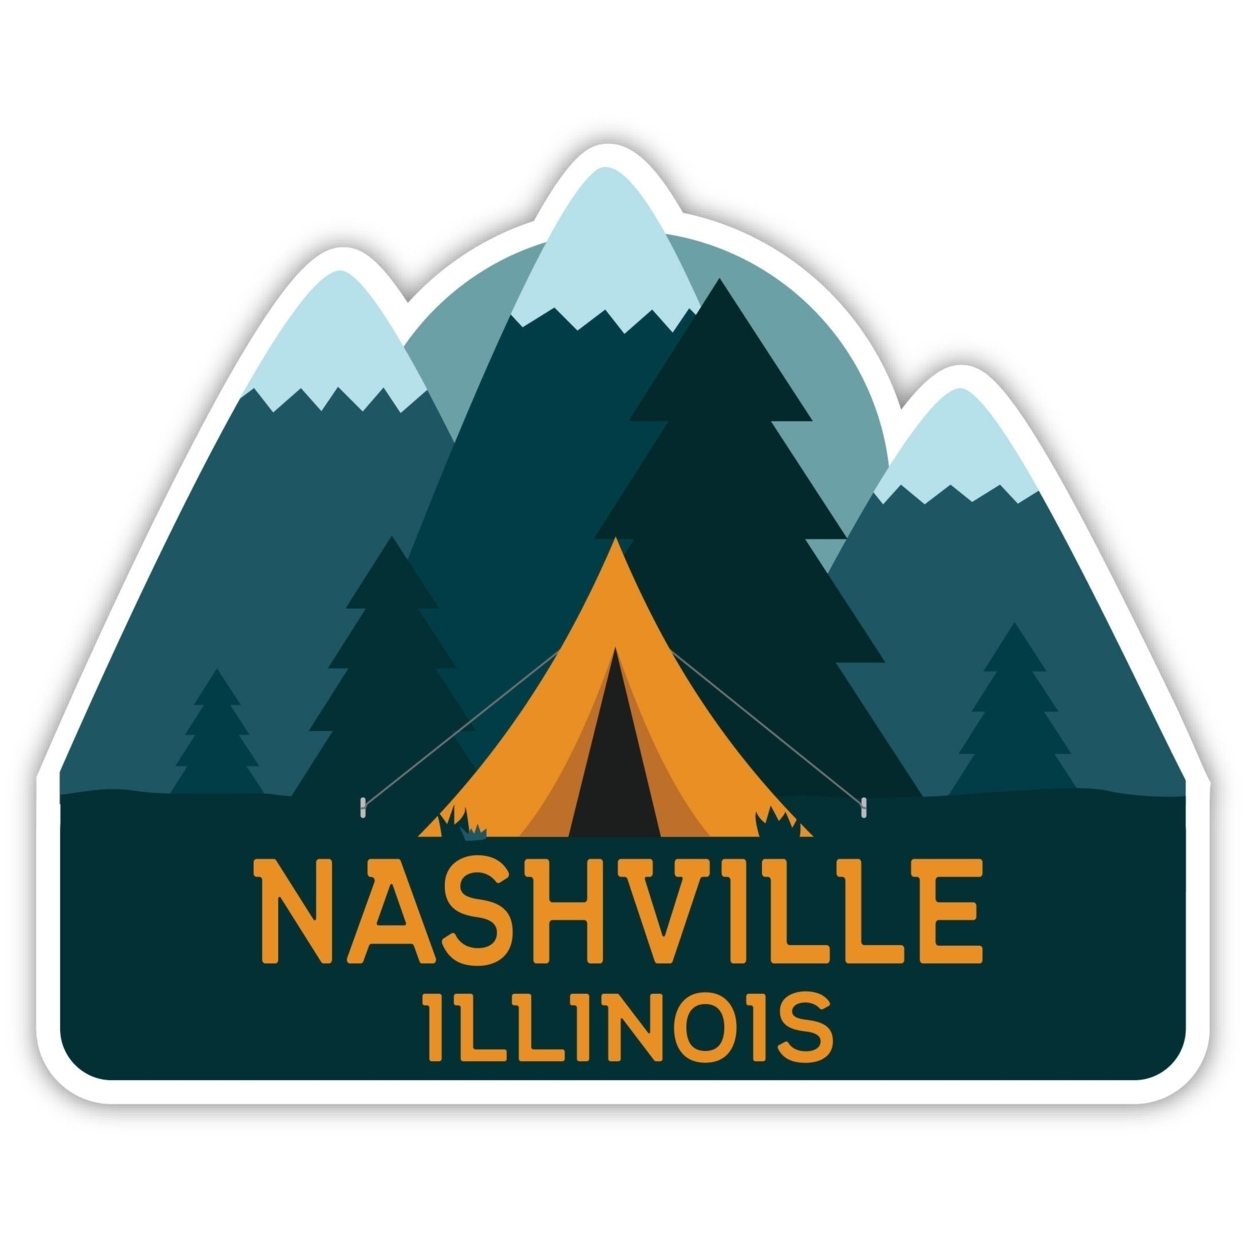 Nashville Illinois Souvenir Decorative Stickers (Choose Theme And Size) - Single Unit, 2-Inch, Tent